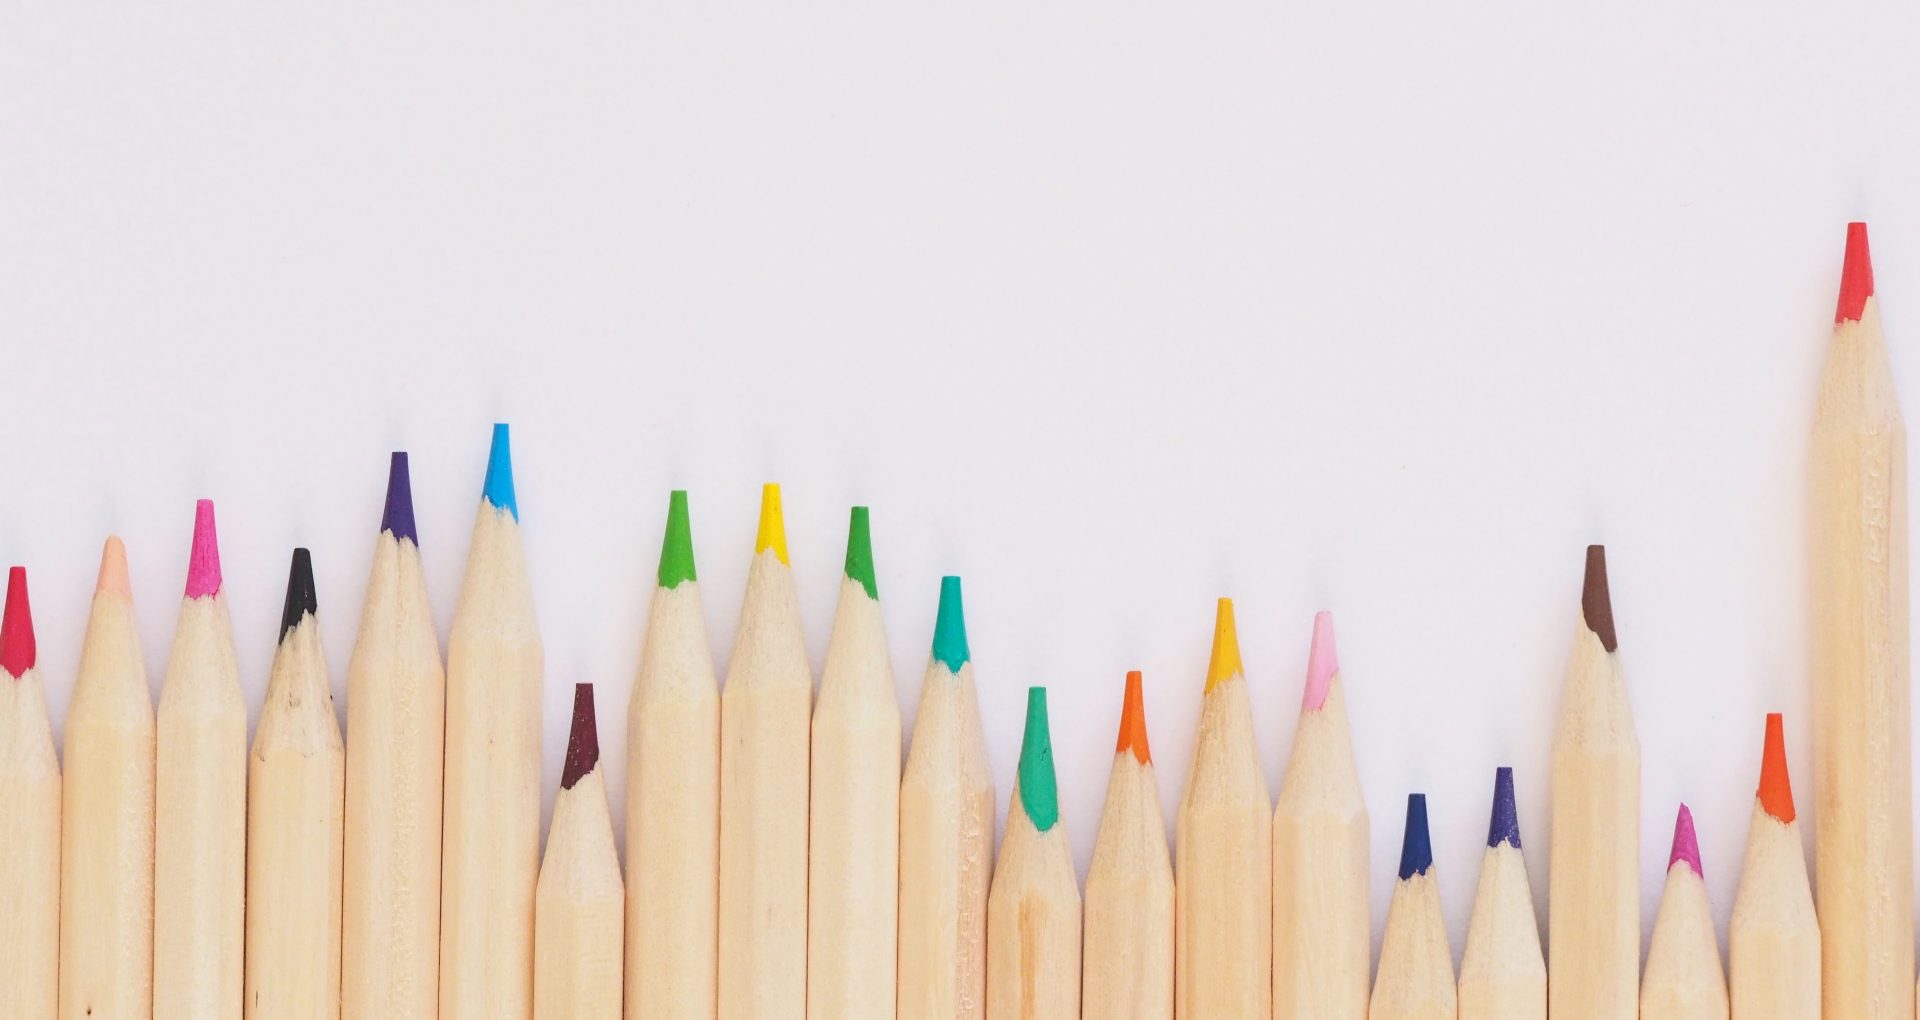 تصویر جالب و دیدنی از مداد رنگی های قشنگ با رنگ های متنوع 